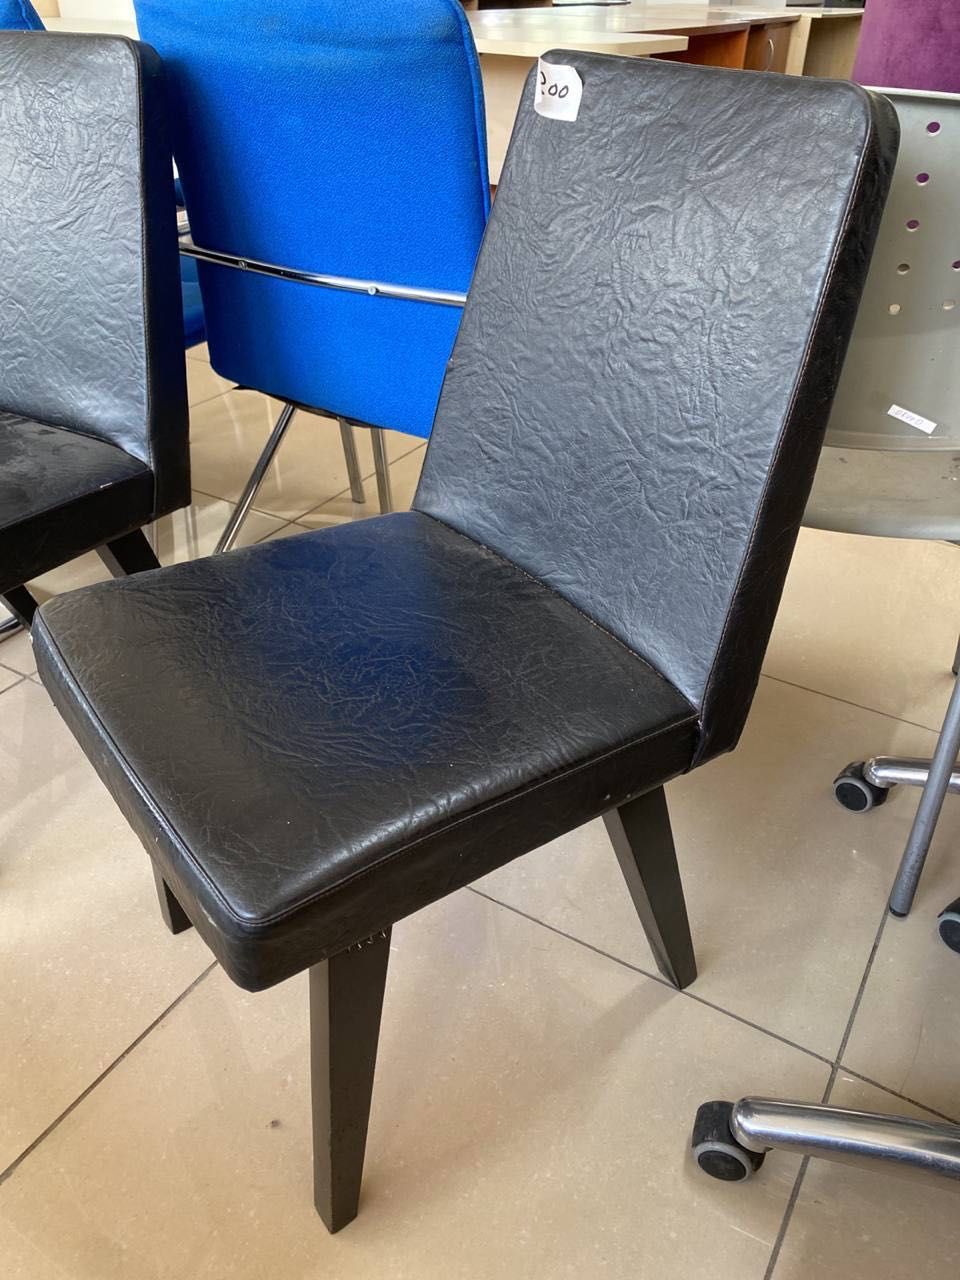 РАСПРОДАЖА офисной мебели кресла стулья сетка